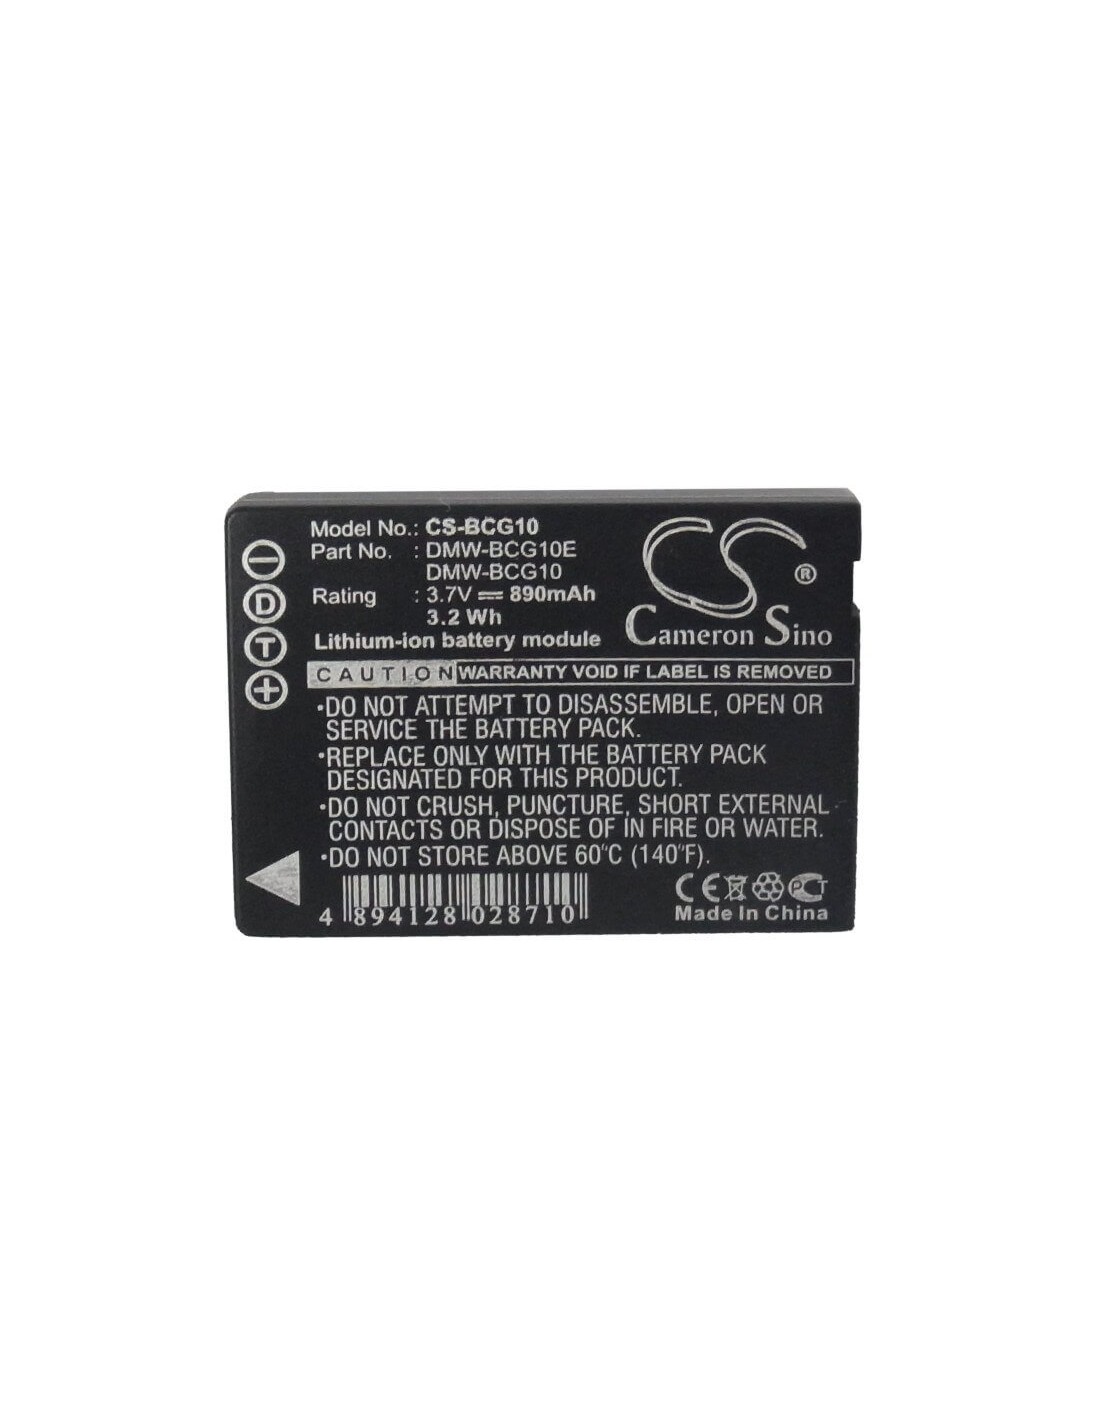 Battery for Panasonic Lumix Dmc-3d1, Lumix Dmc-3d1k, 3.7V, 890mAh - 3.29Wh